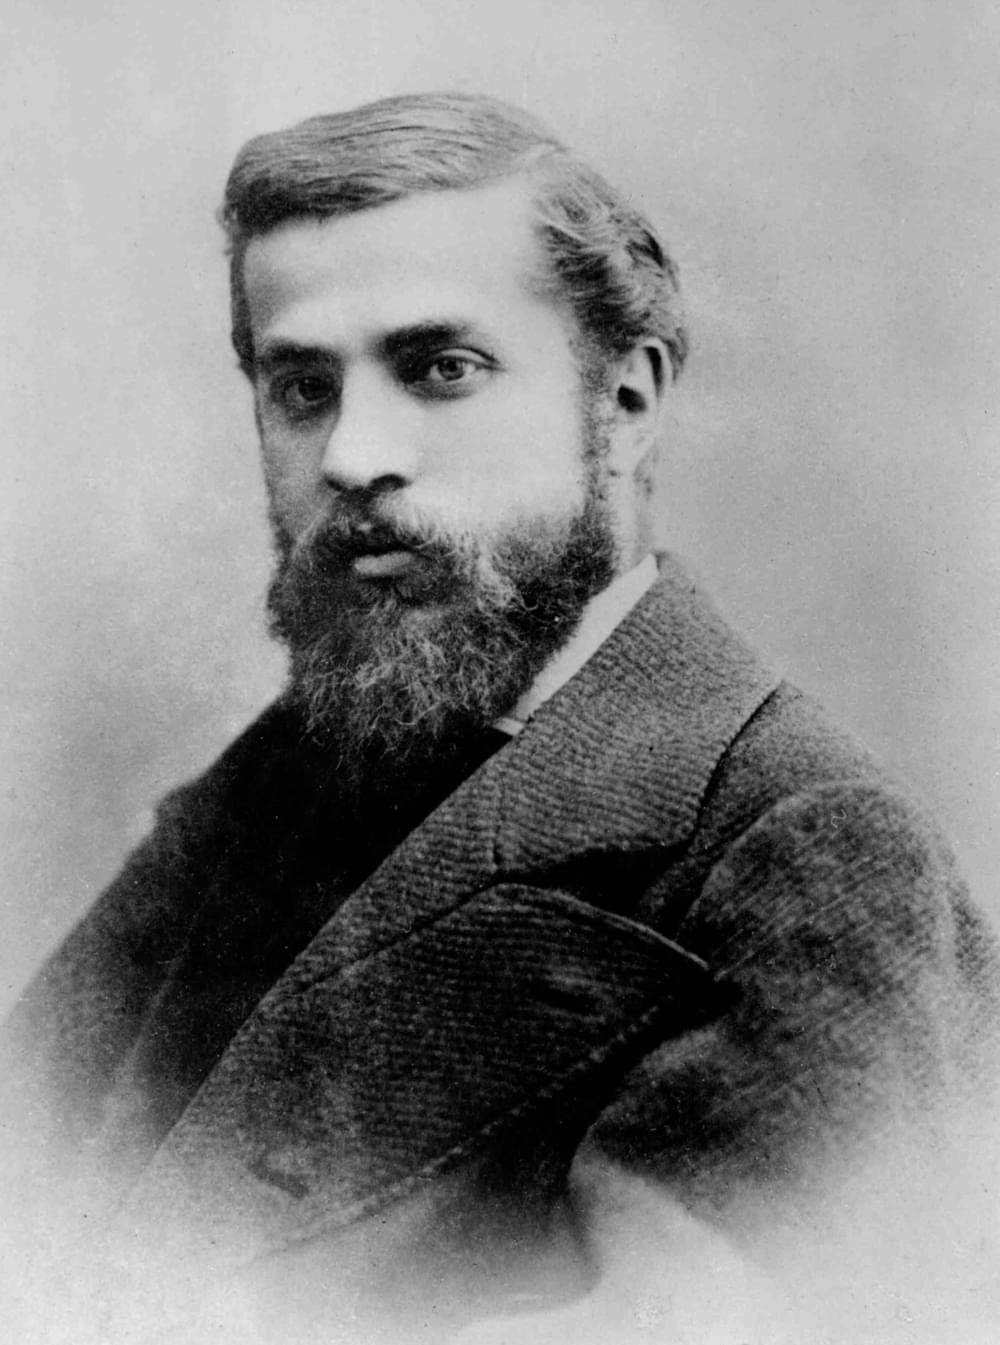 Photograph of Antoni Gaudí by Pau Audouard, 1878